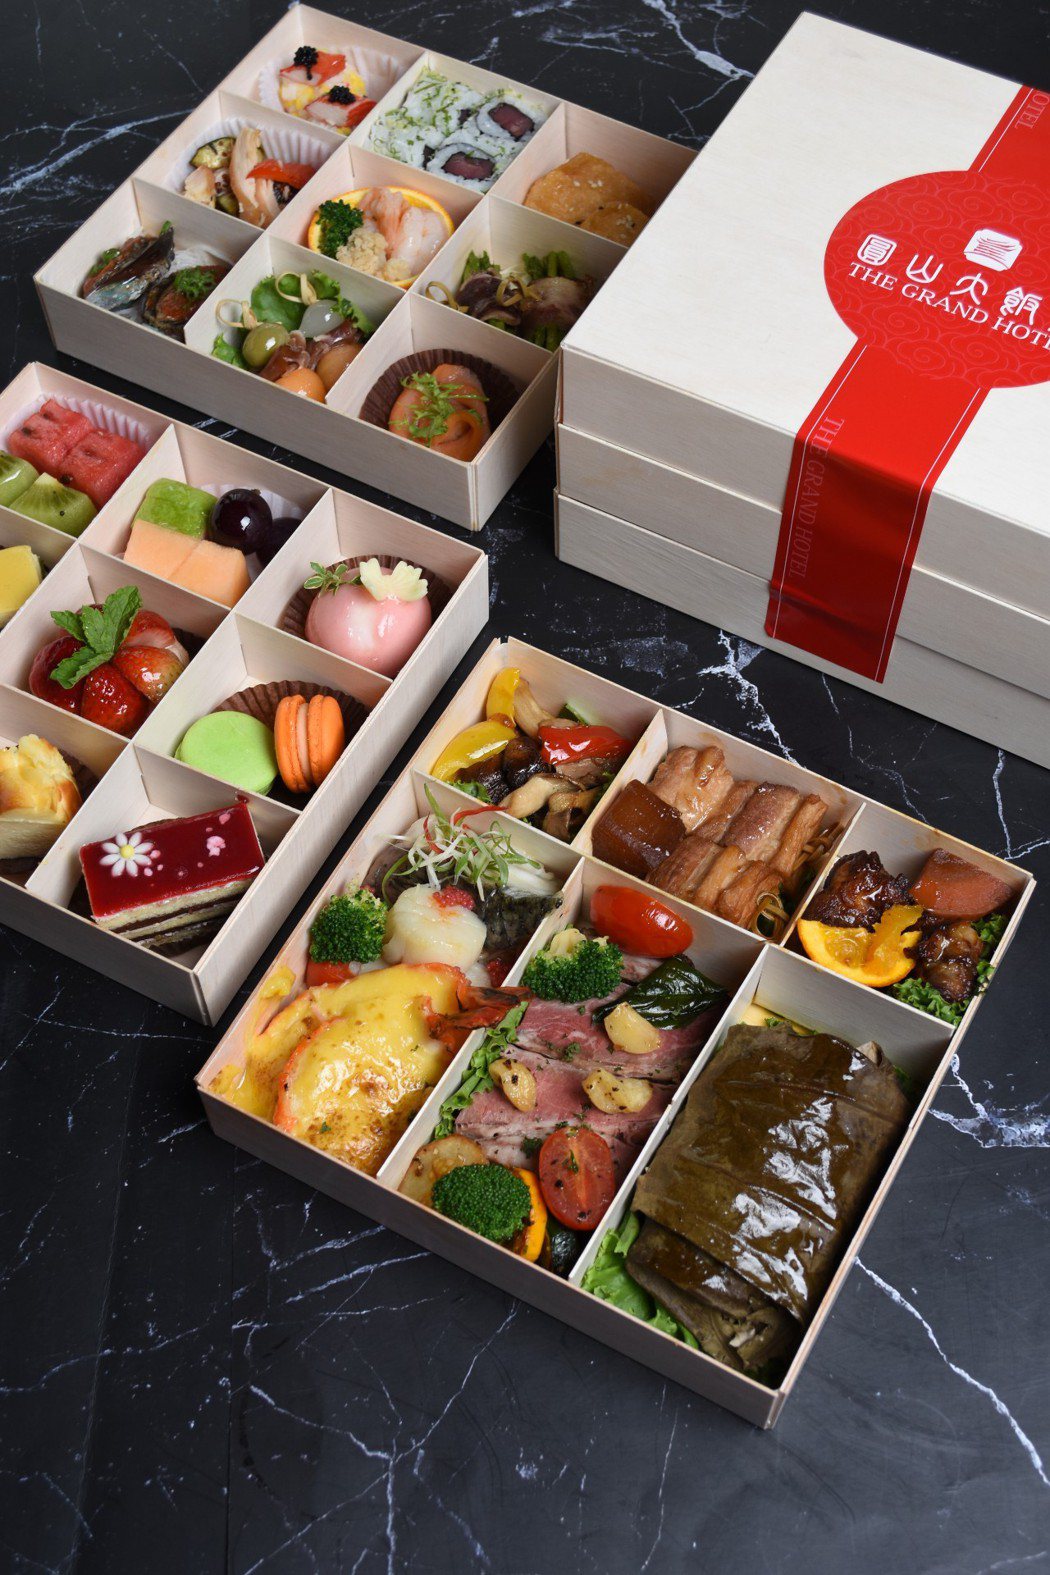 圓山大飯店松鶴餐廳1,380元天然美味極品寶盒-外帶餐盒。圓山大飯店/提供